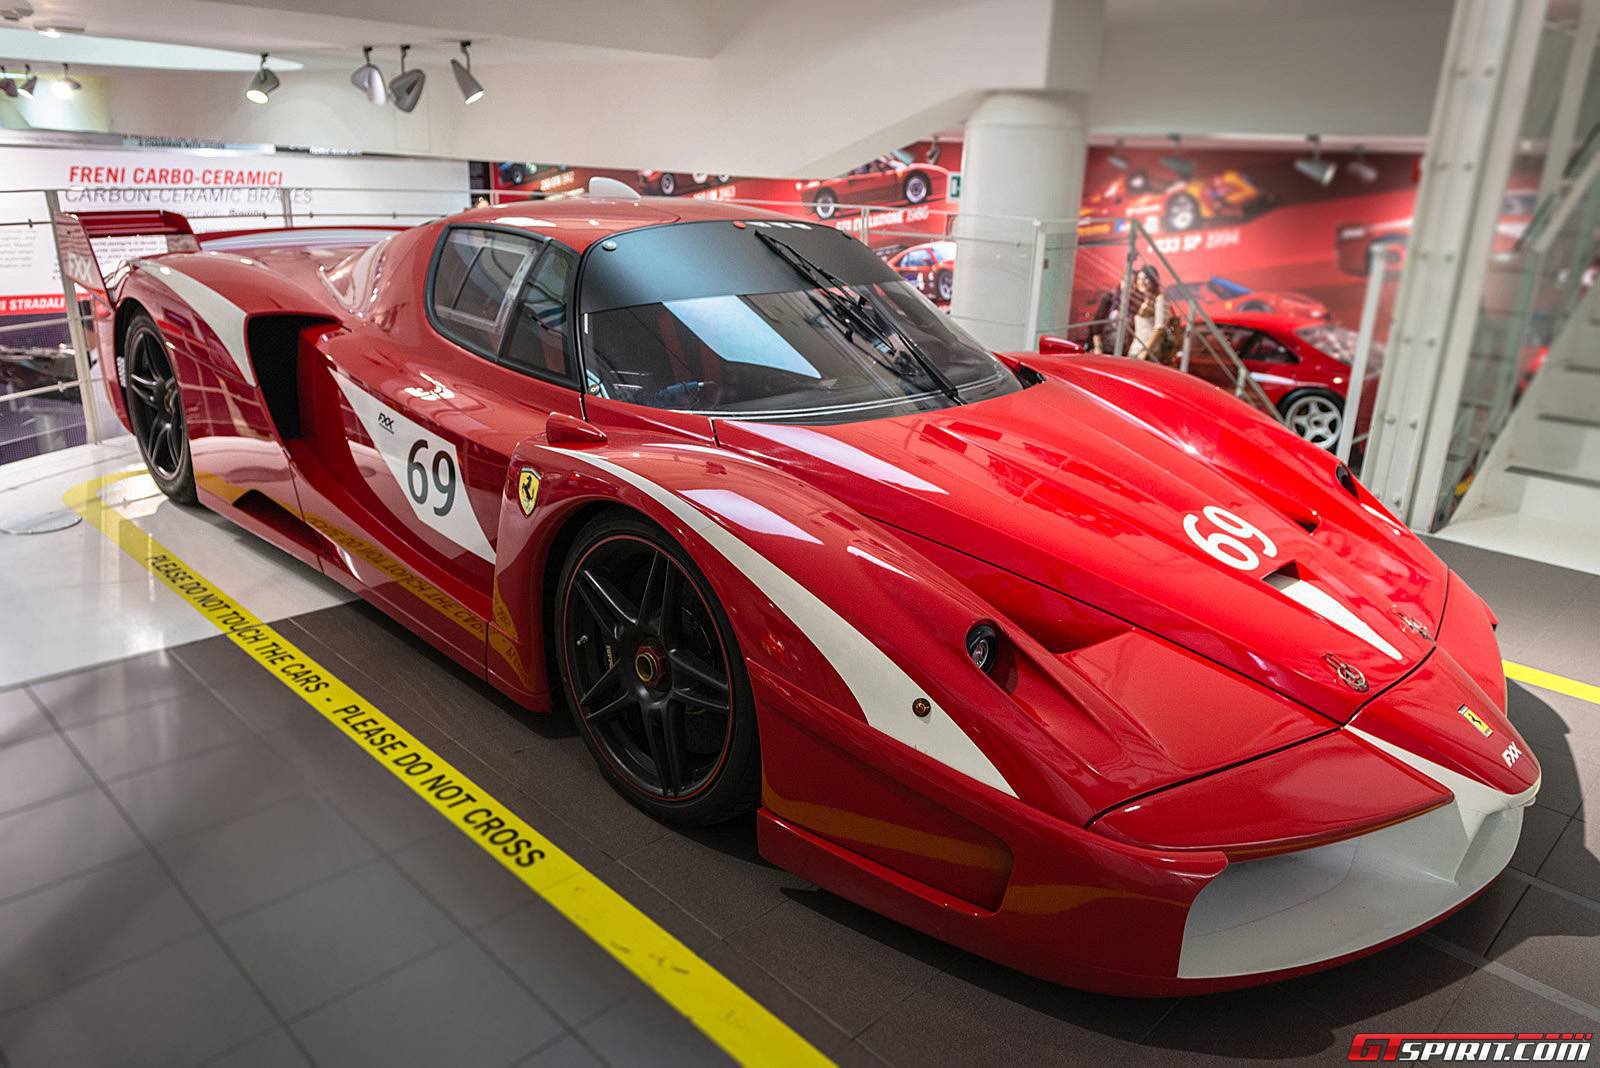 Choáng ngợp với Viện bảo tàng Ferrari tại Ý 32